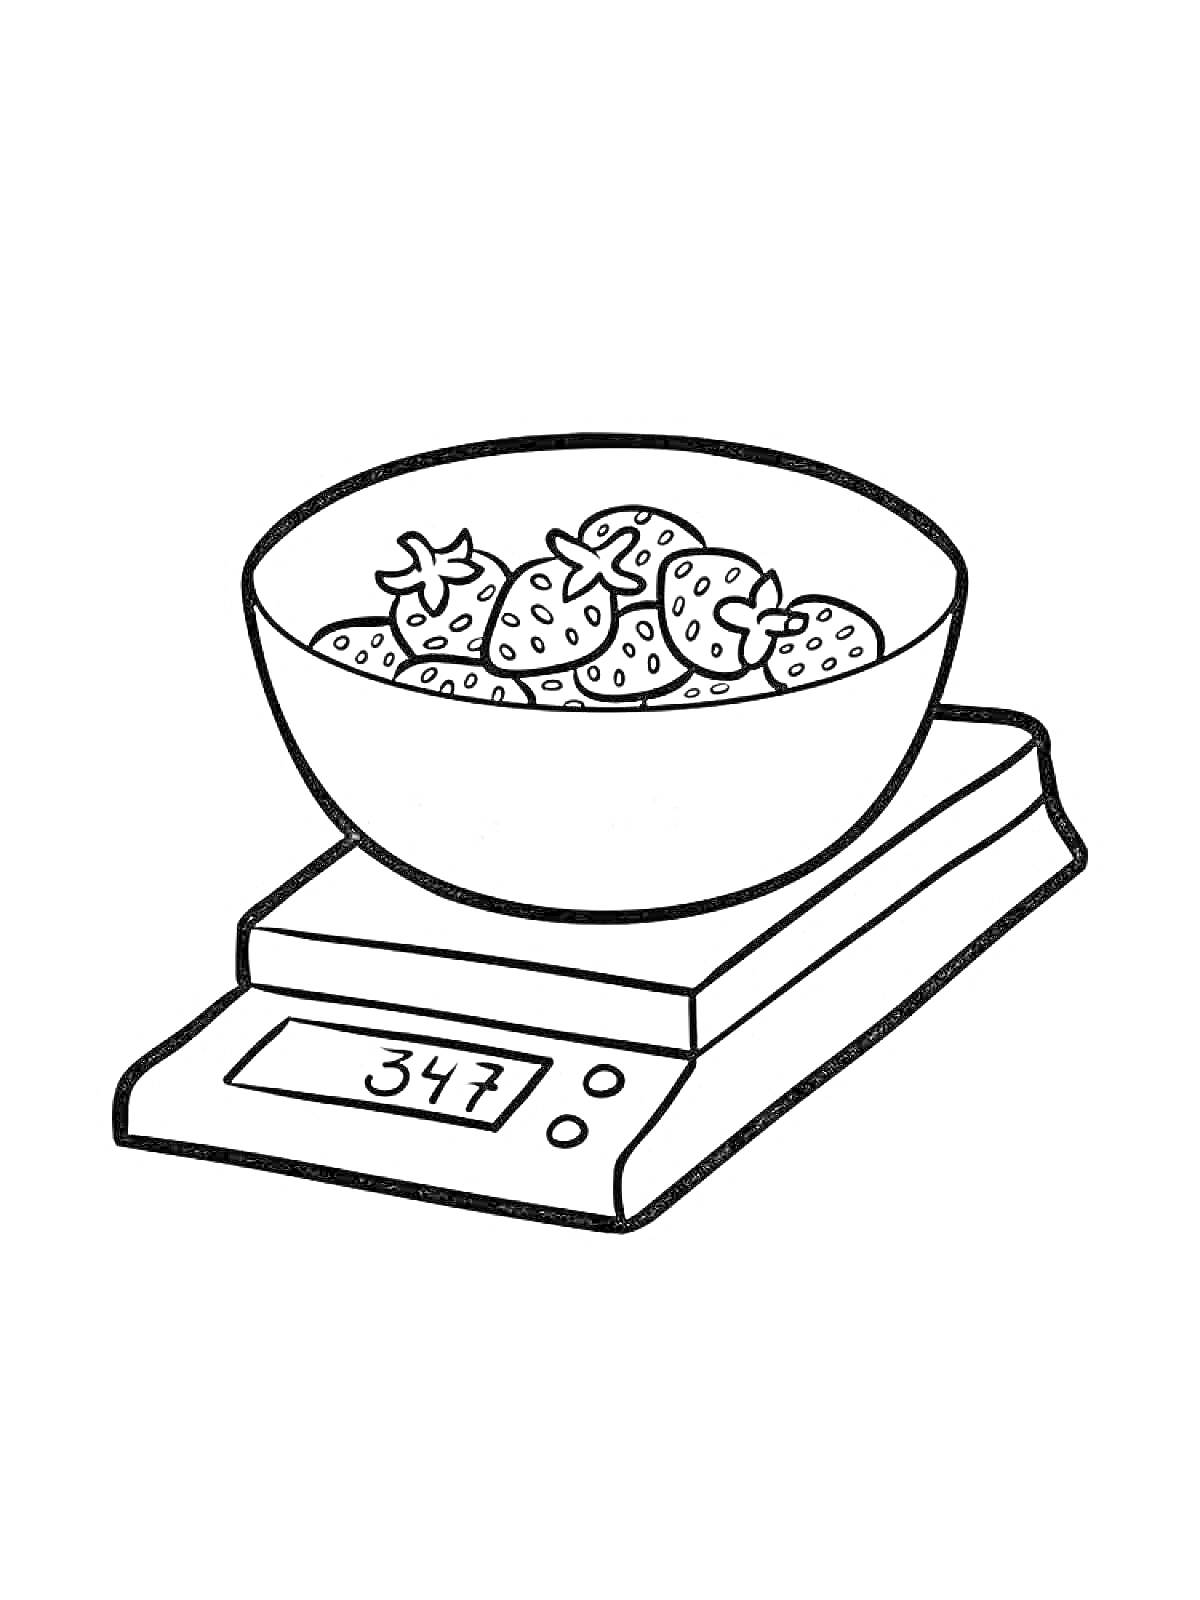 Раскраска Кухонные весы с клубникой в миске и дисплеем, показывающим вес 347 грамм.